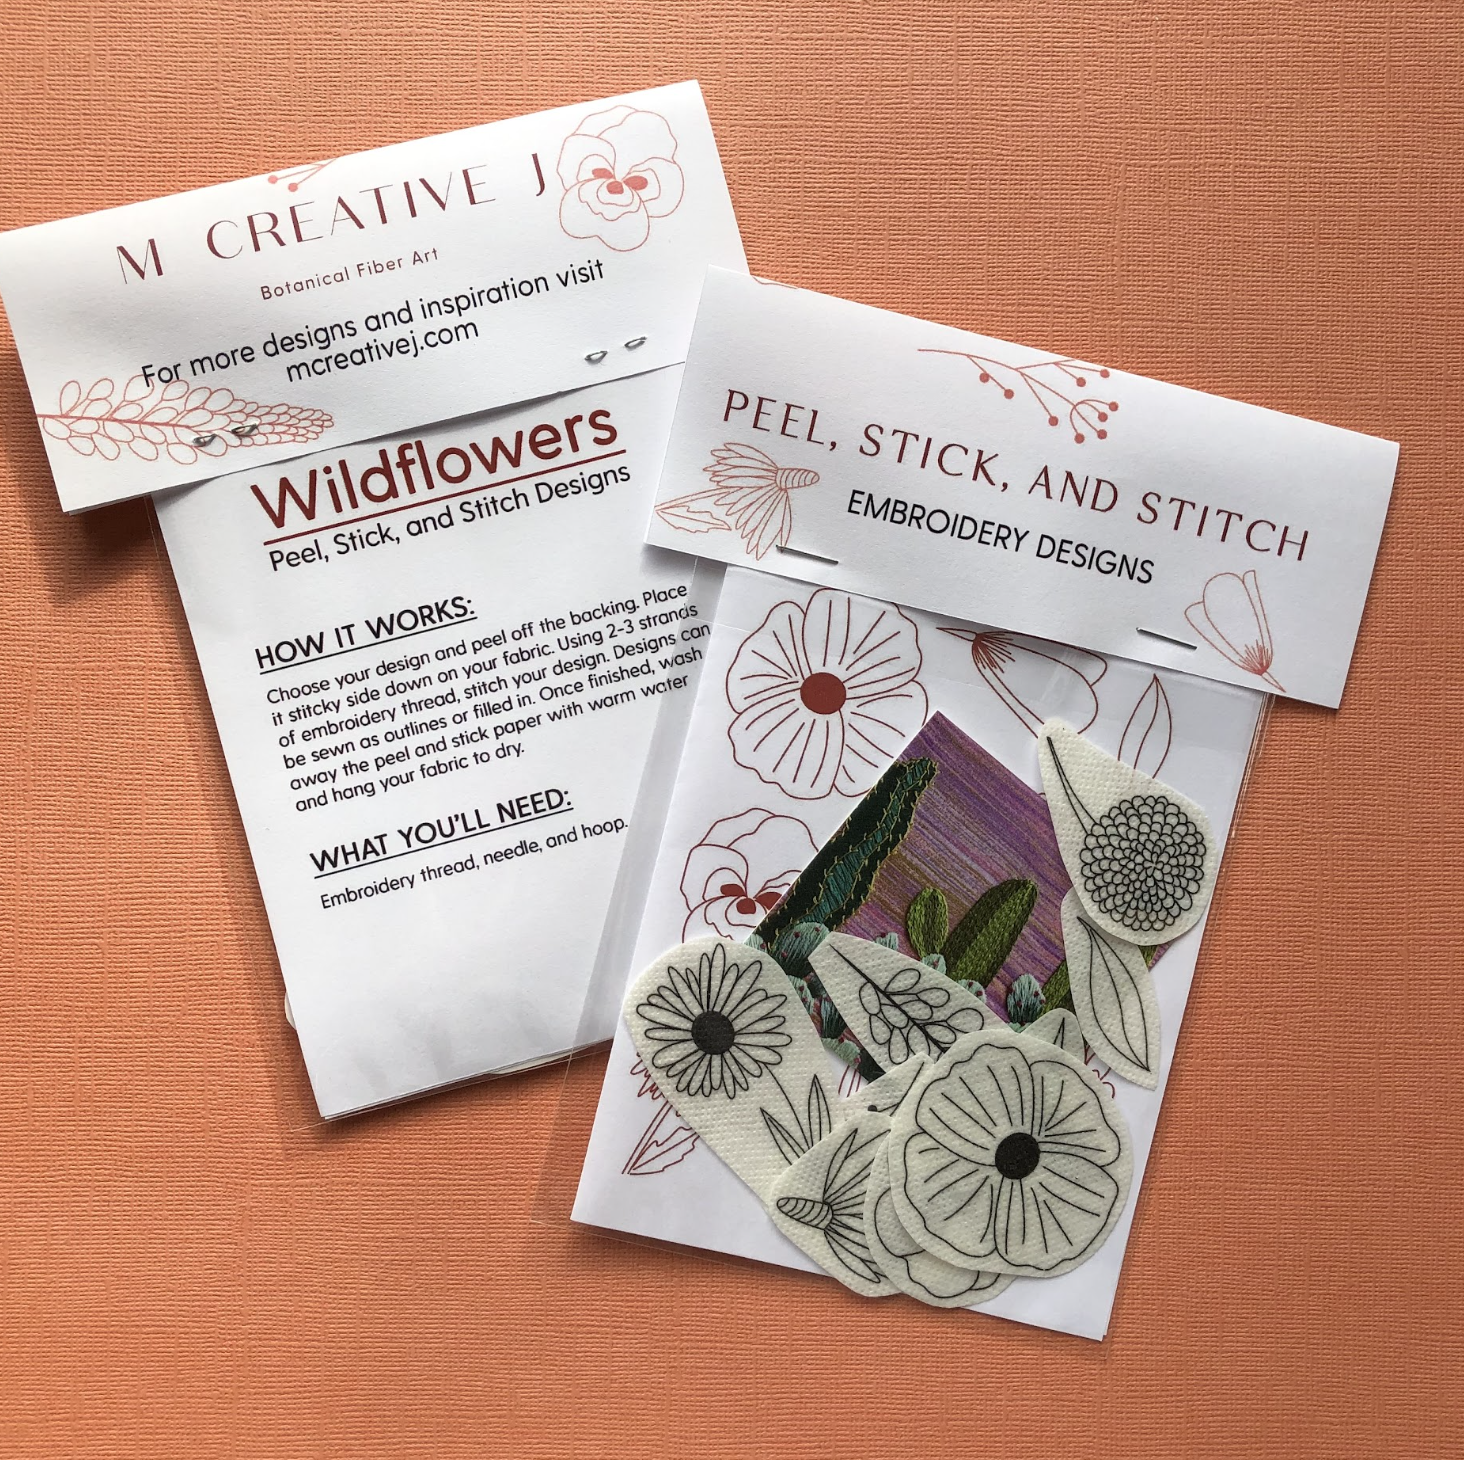 Christmas Wish List Upcycle + FREE Printable - Botanical PaperWorks